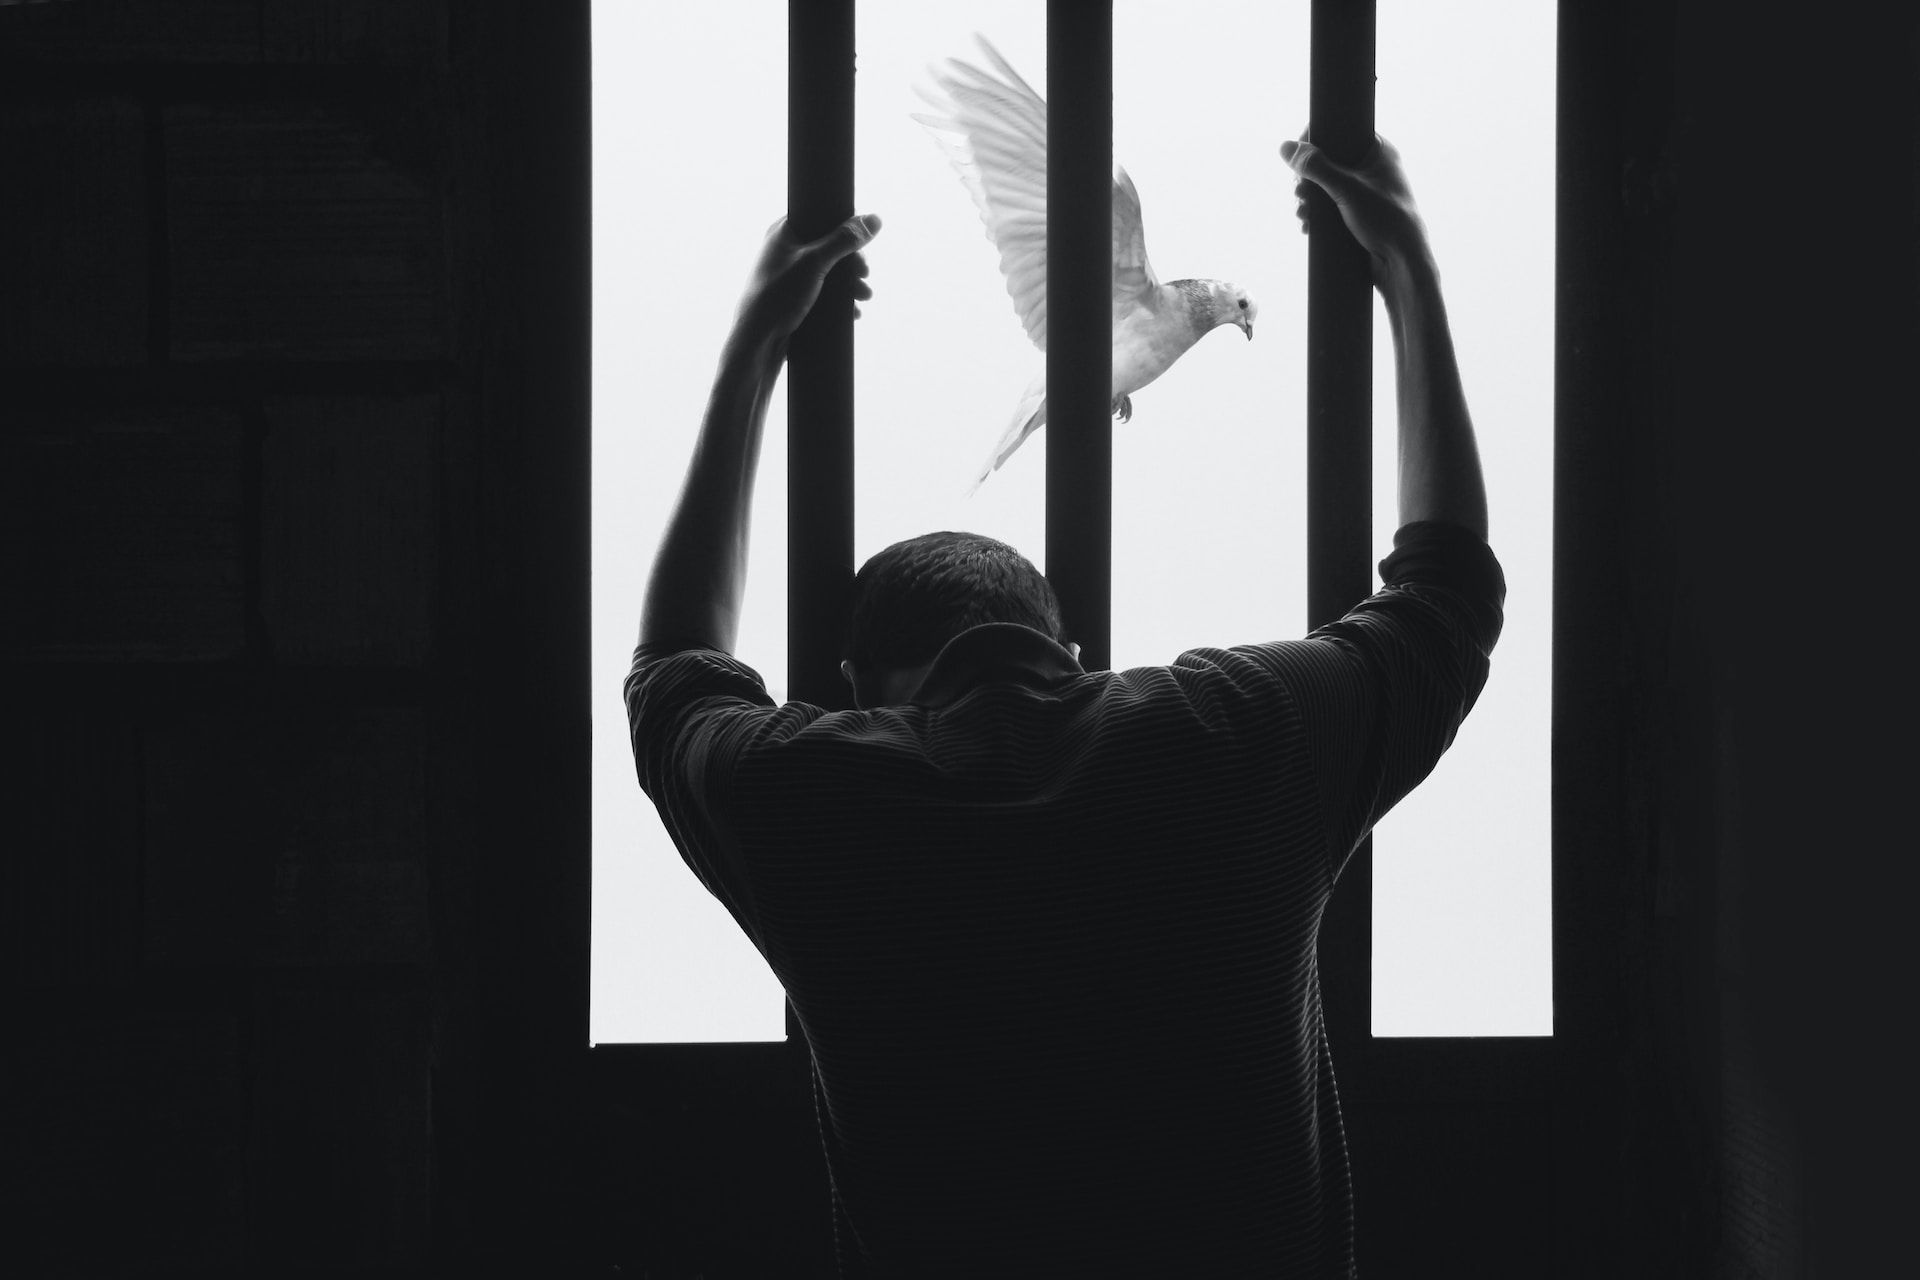 Un homme regarde à travers des barreaux une colombe dans le ciel - Photo by Hasan Almasi on https://unsplash.com/fr/photos/aIRBGPafi74